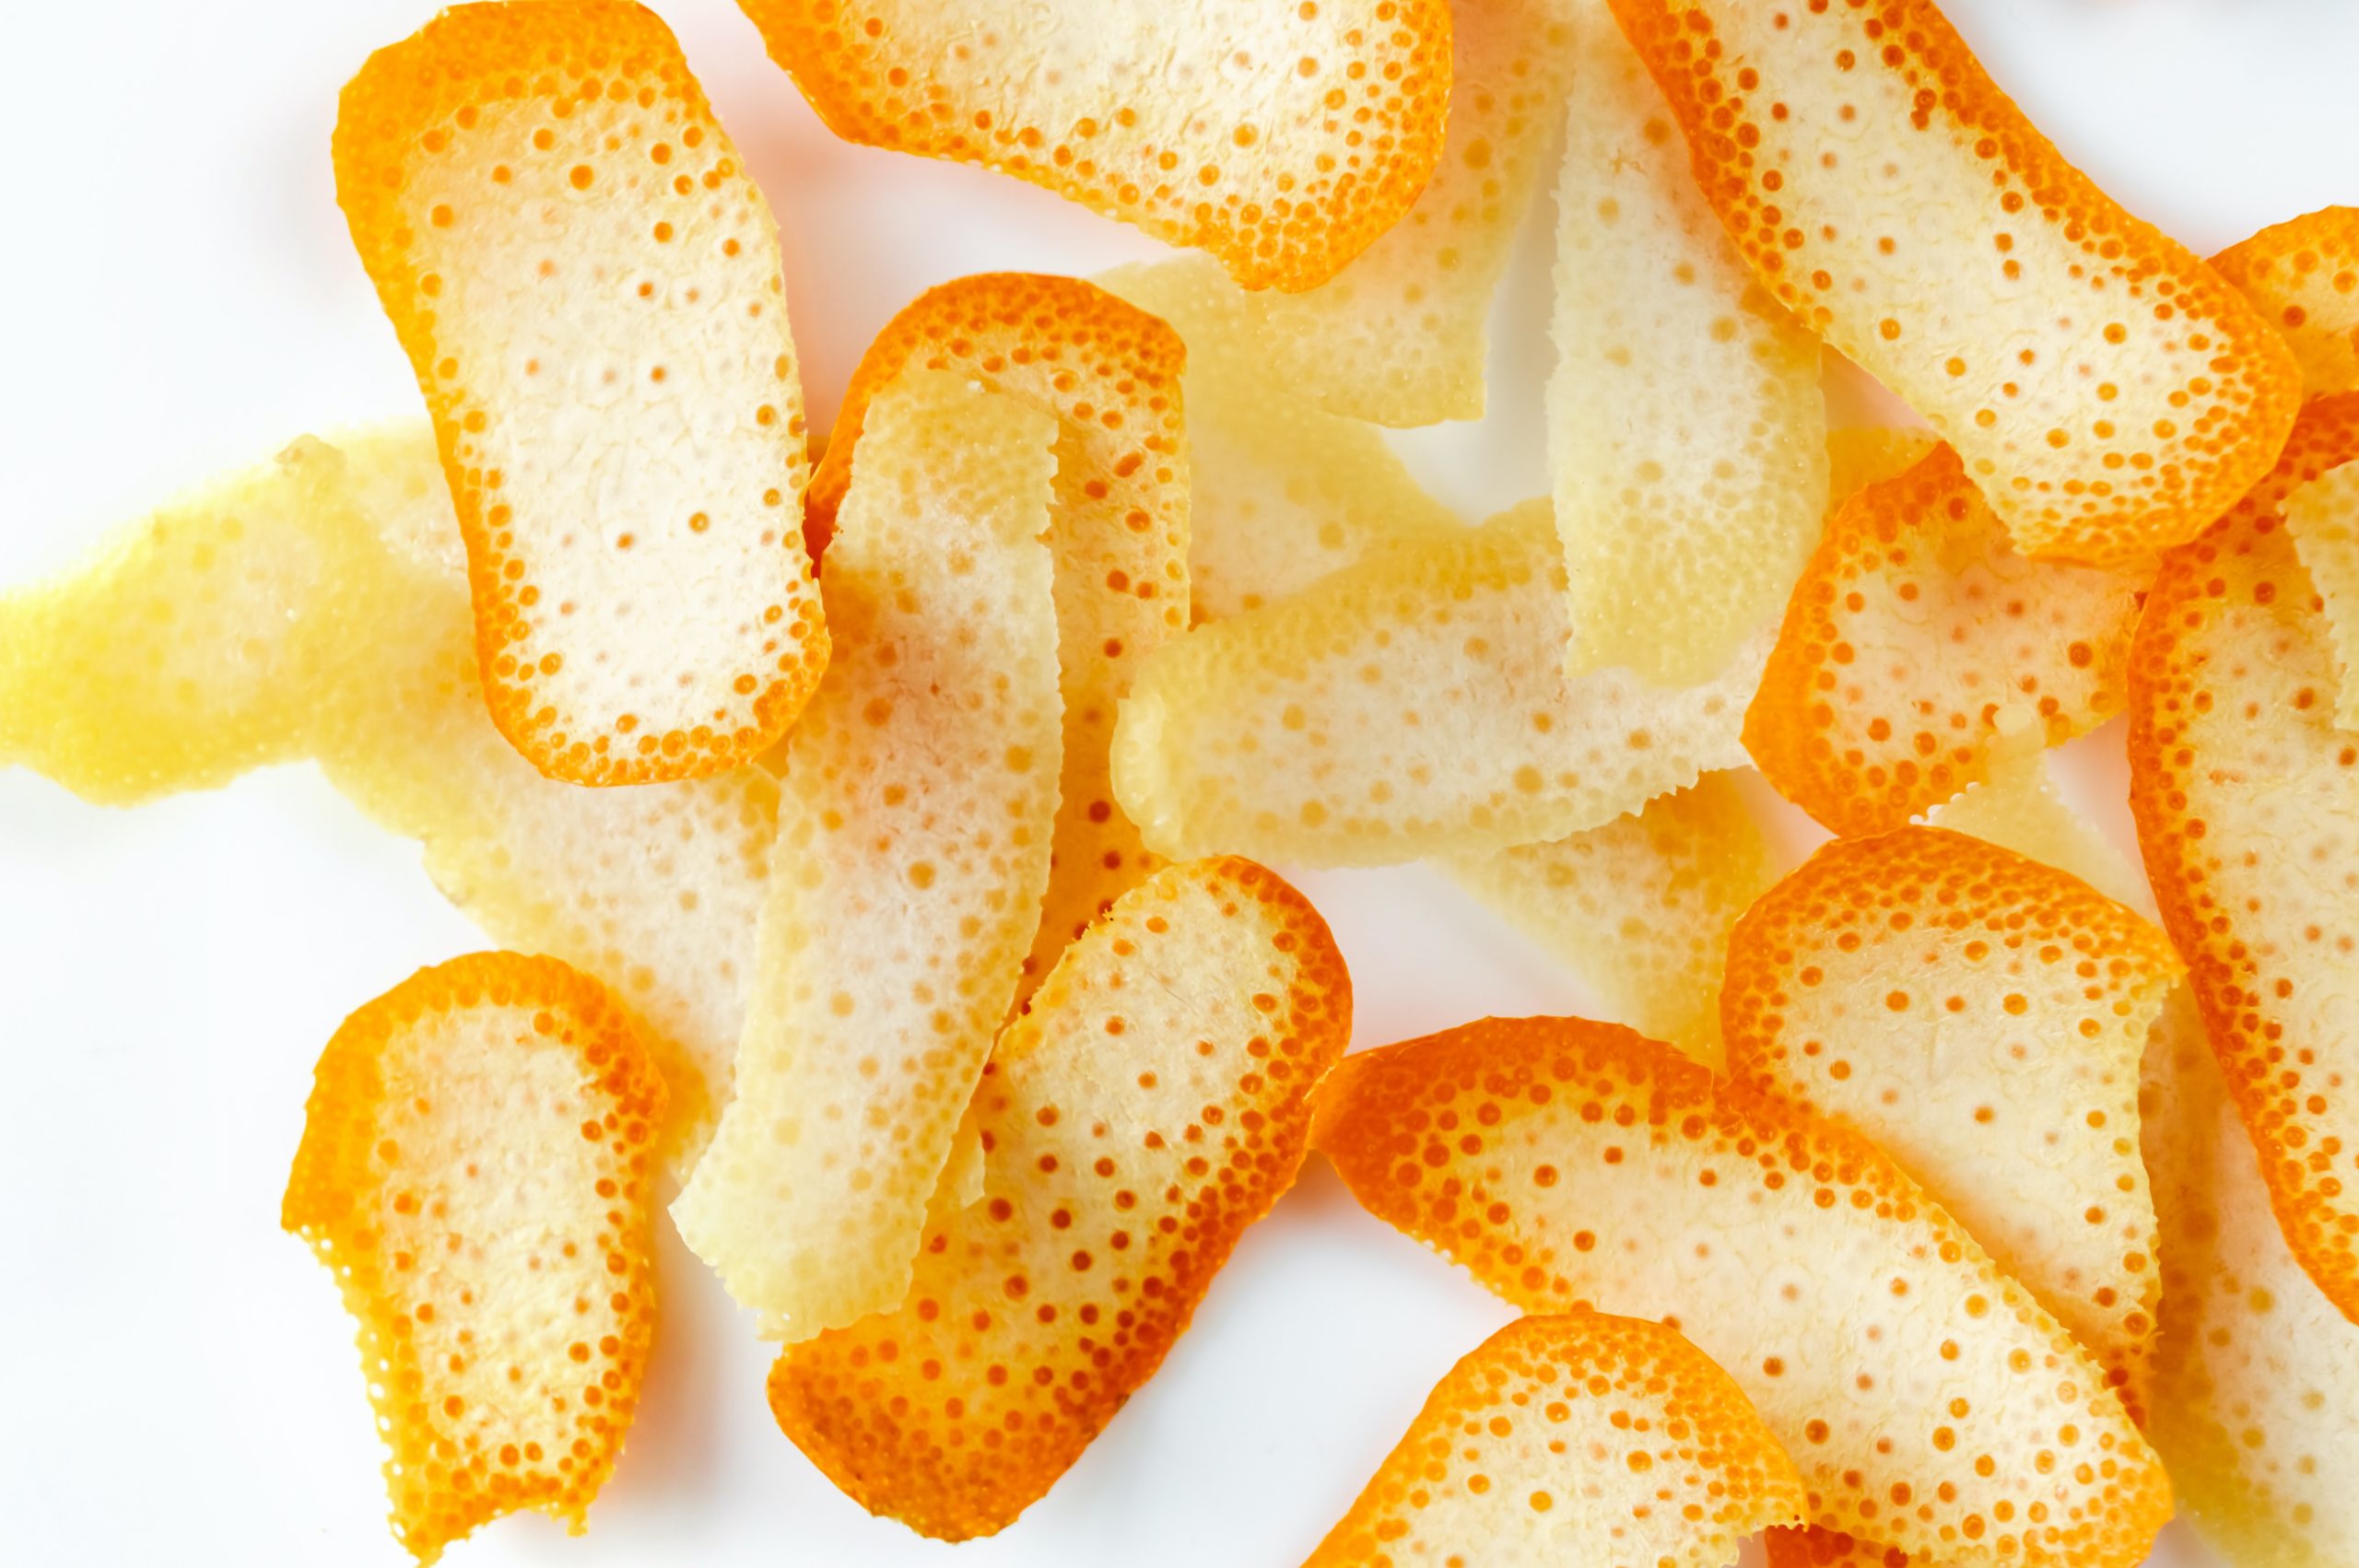 Conservar piel de limón y naranja para tus postres.